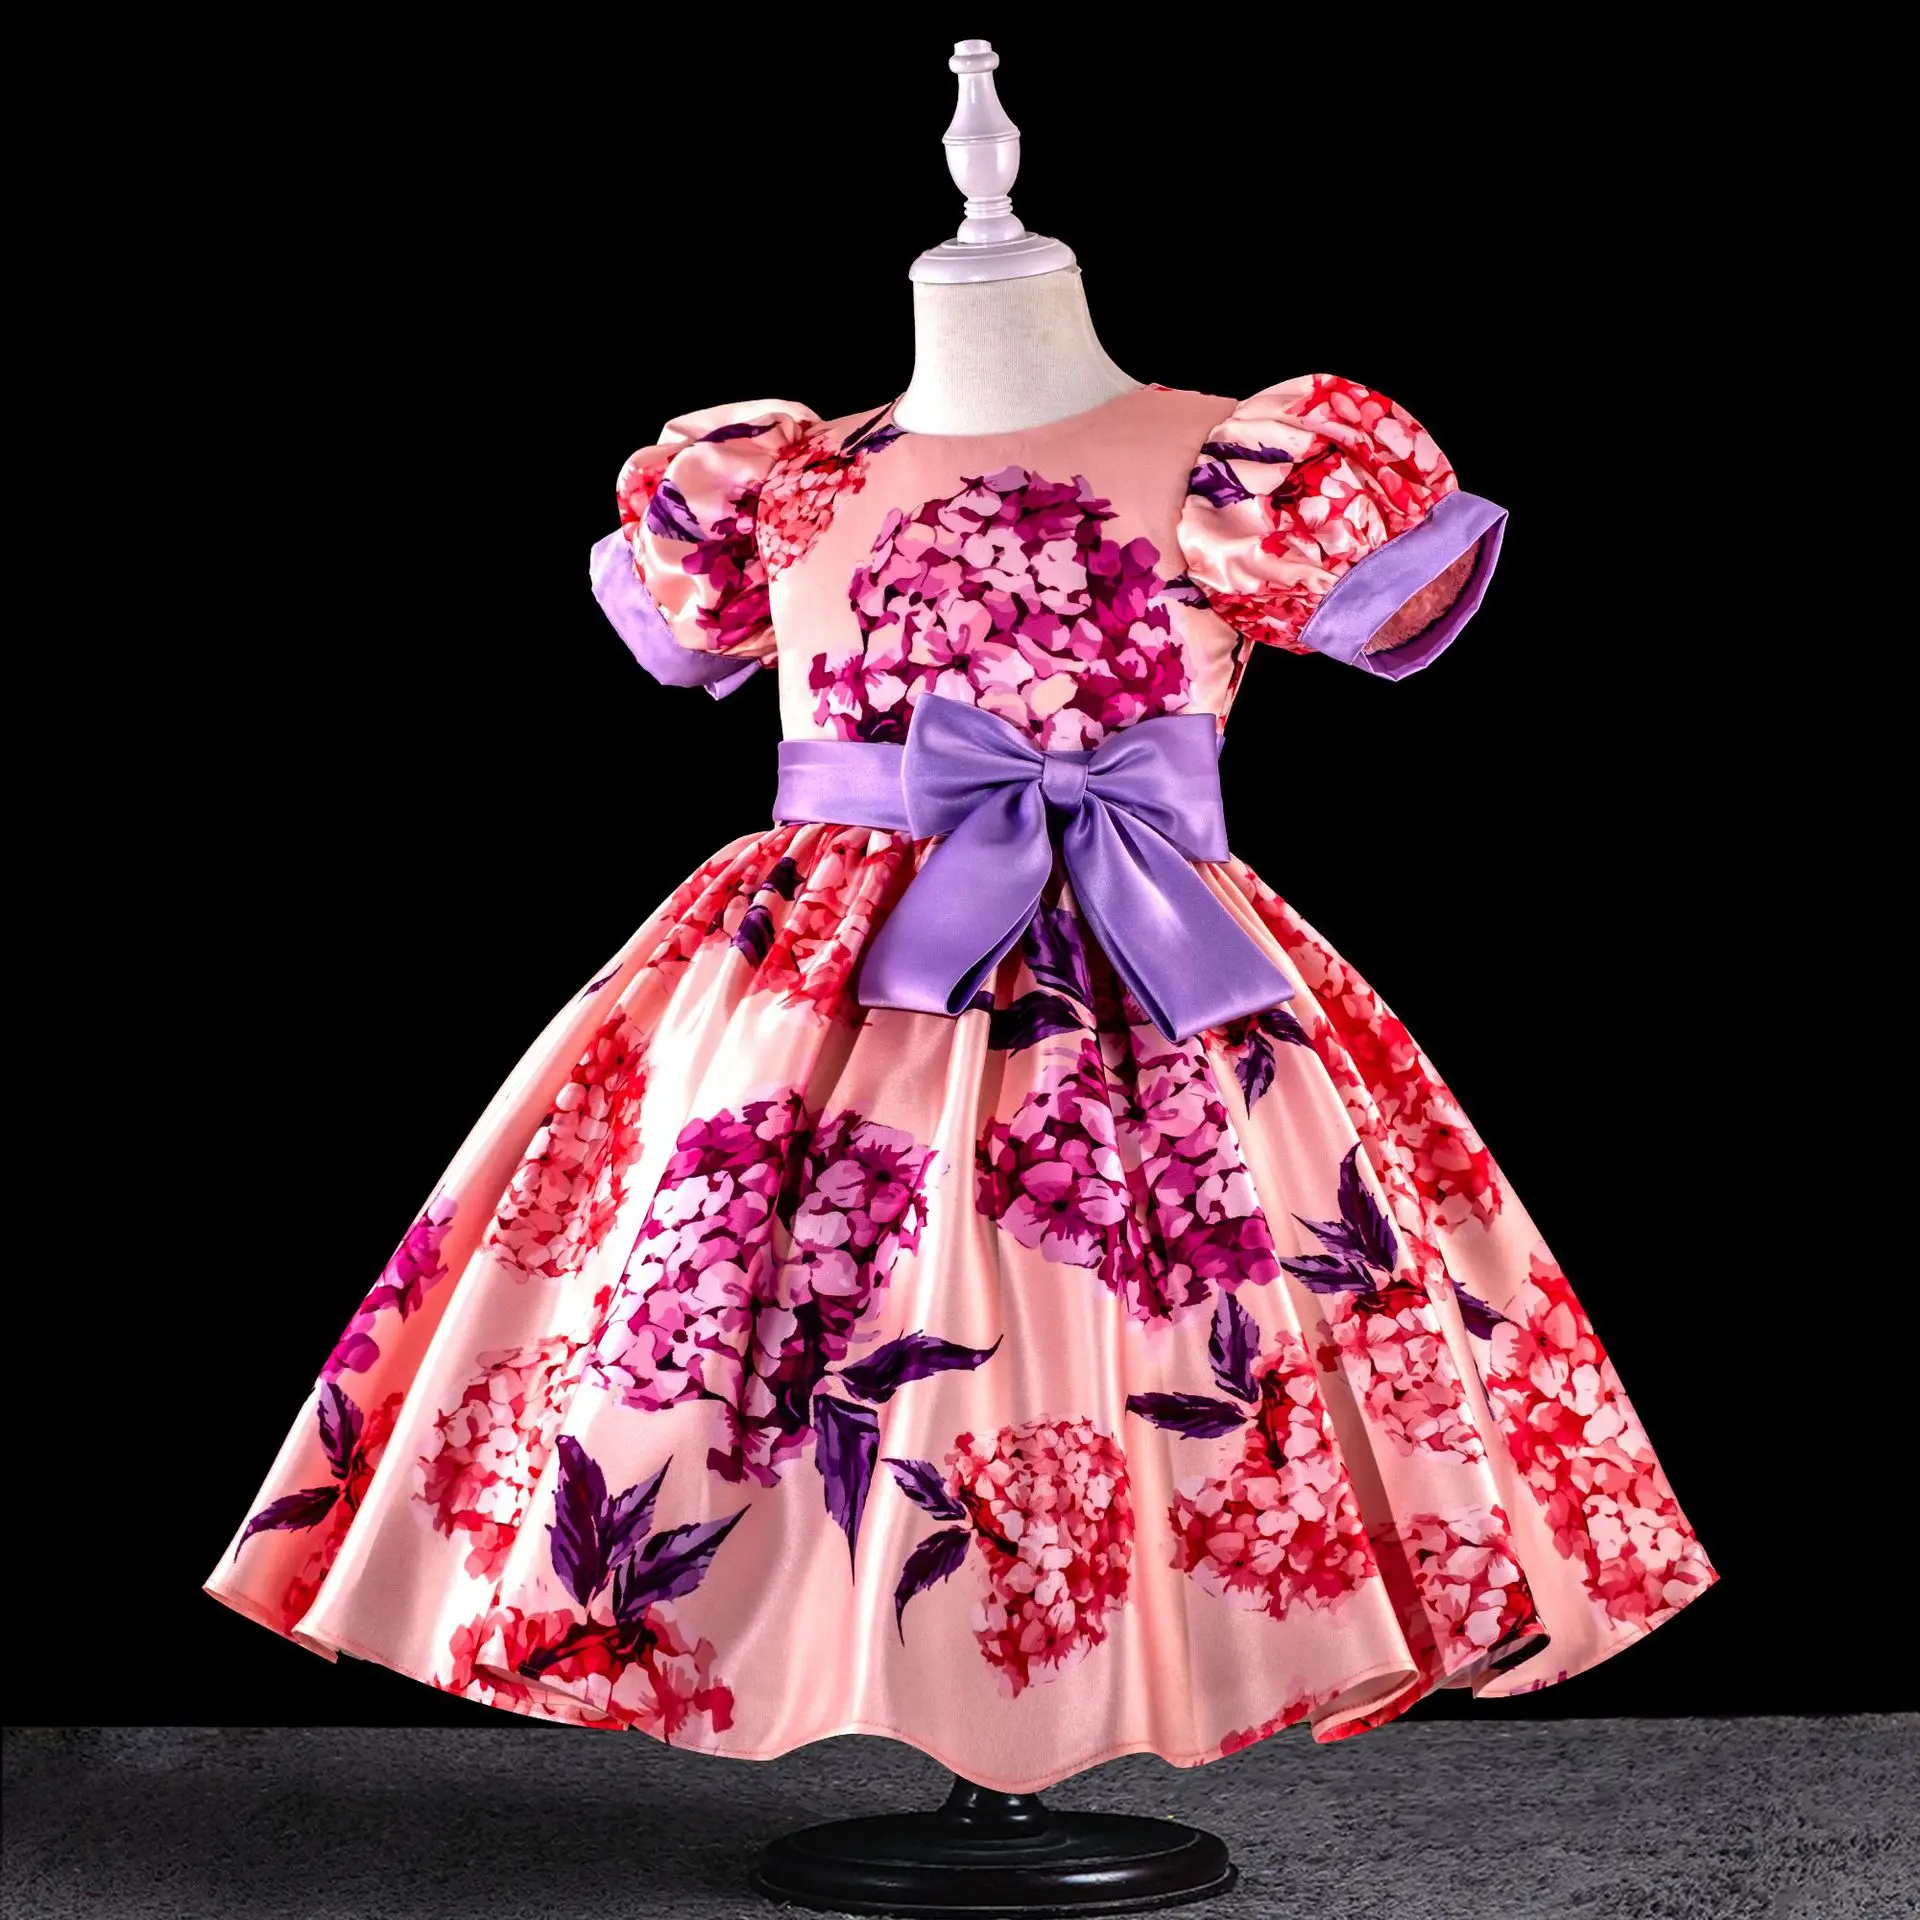 

HETISO/детское хлопковое вечерние платье с цветочным рисунком и розами для девочек детское платье принцессы на Рождество, день рождения, свадьбу, вечерние платье для маленьких девочек, От 4 до 12 лет